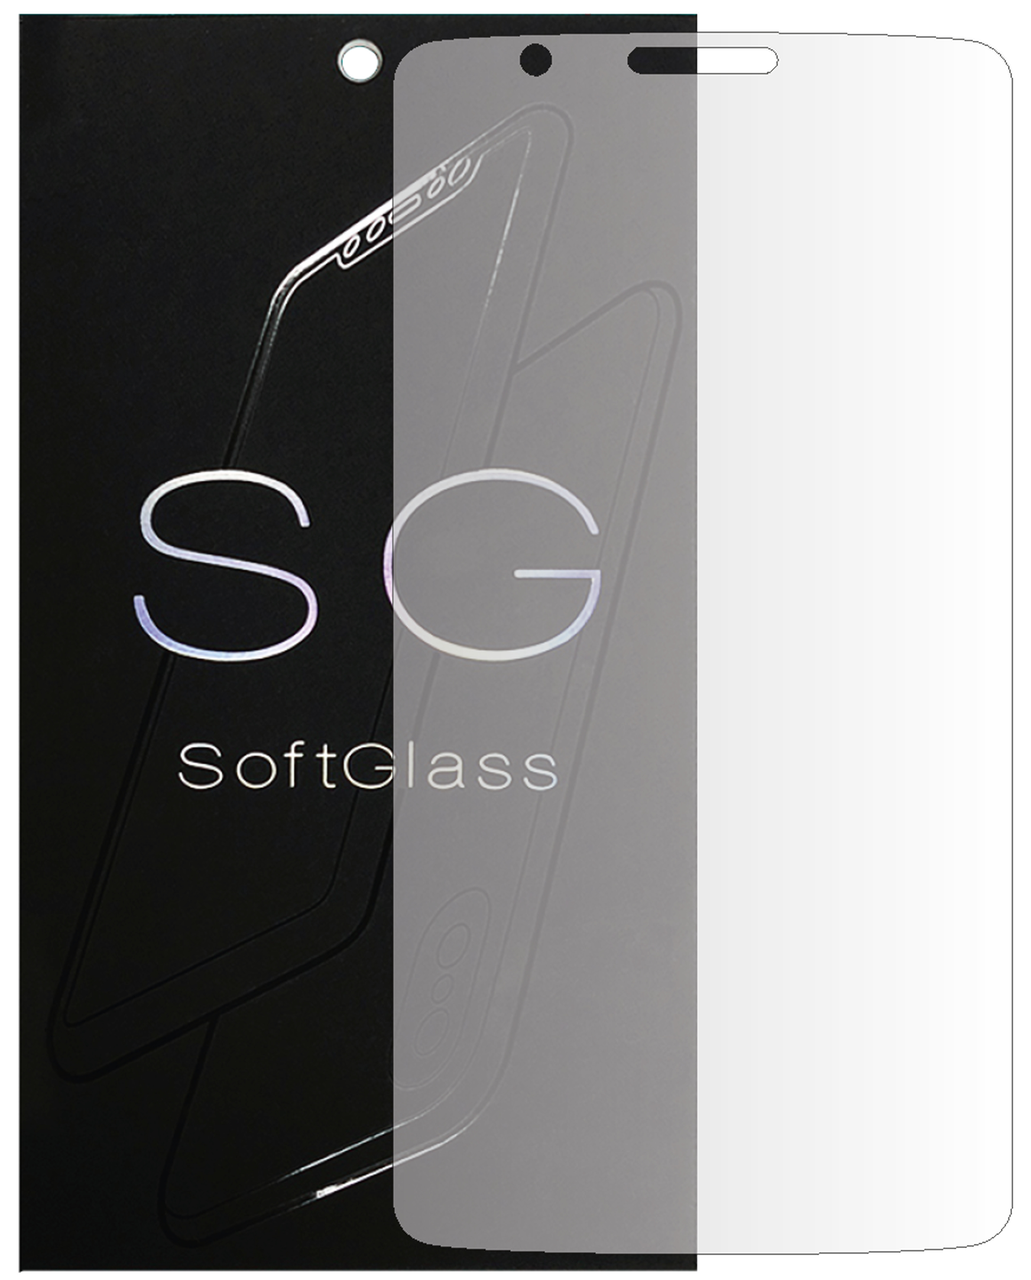 Плівка LG G3 Stylus на екран поліуретанова SoftGlass